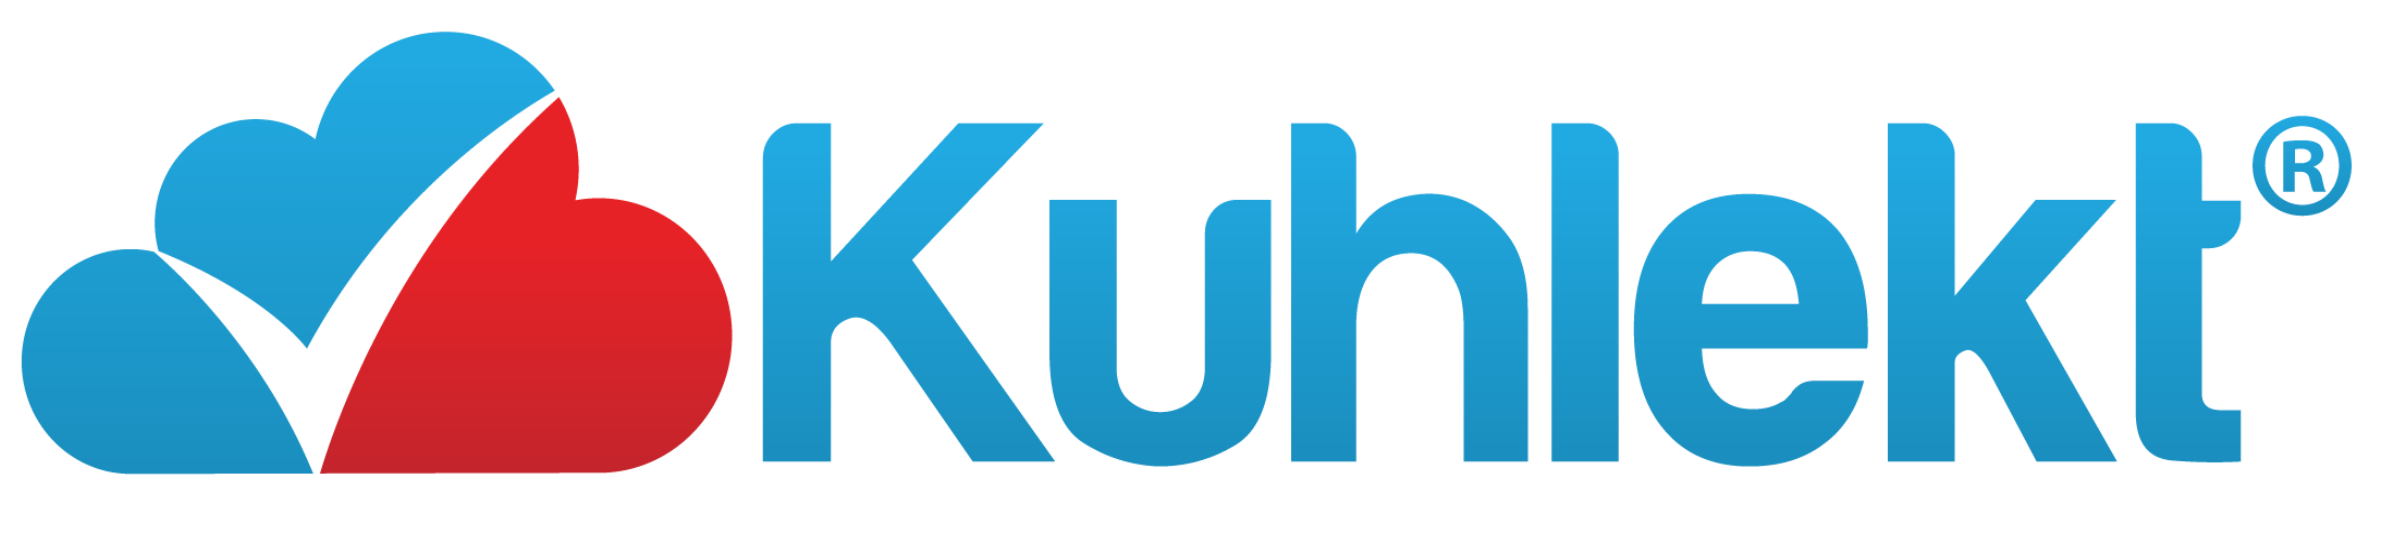 Kuhlekt Logo Transparent Used on app